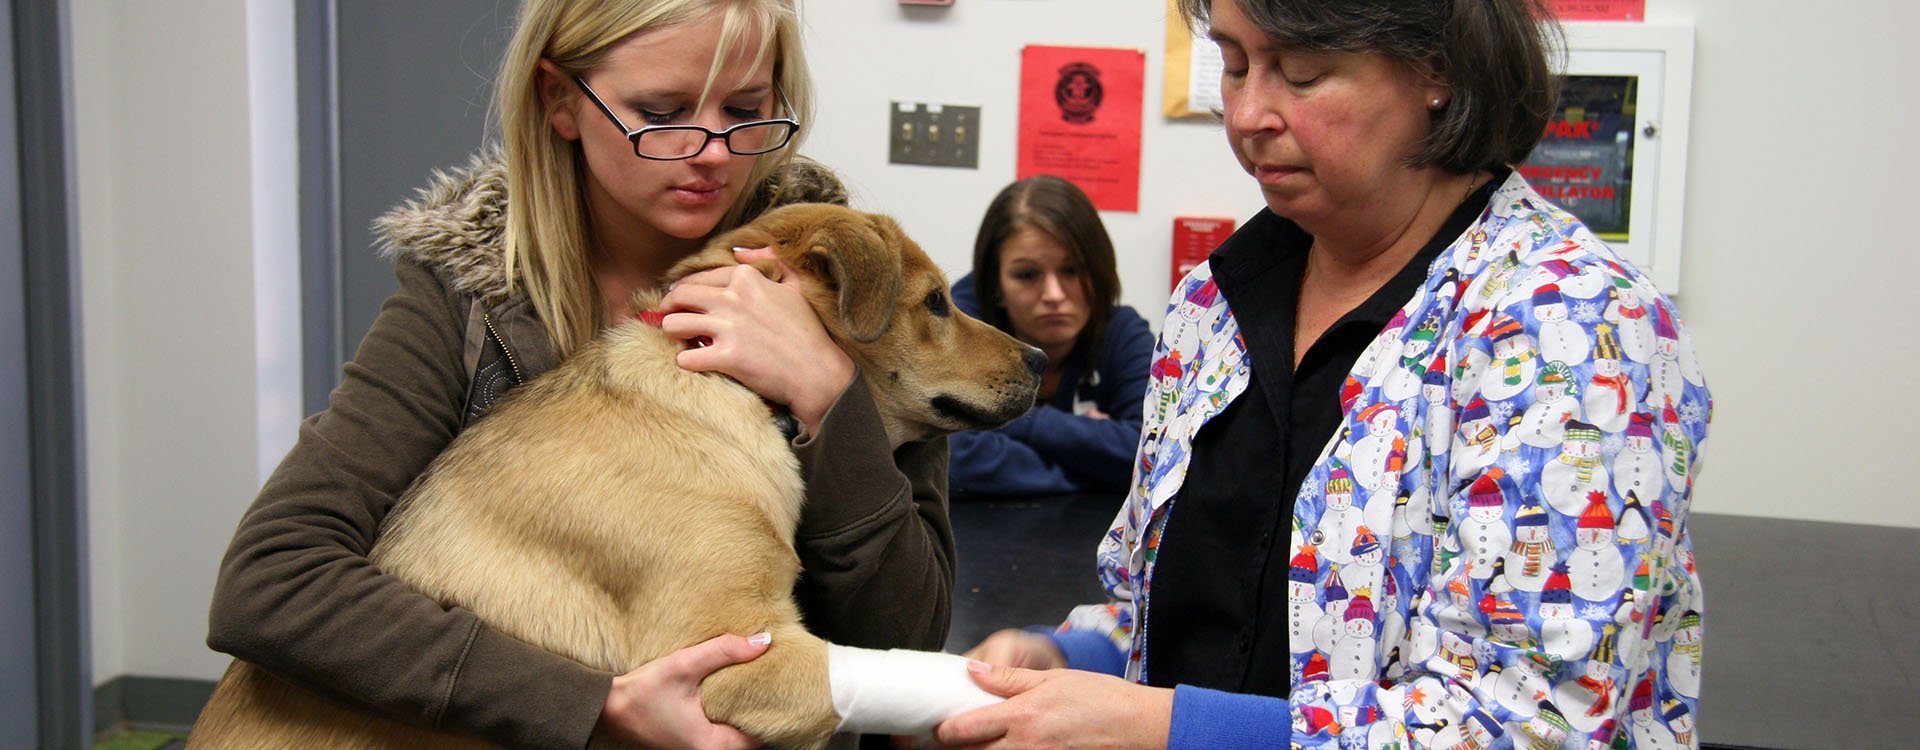 student assisting vet bandage a dog's leg